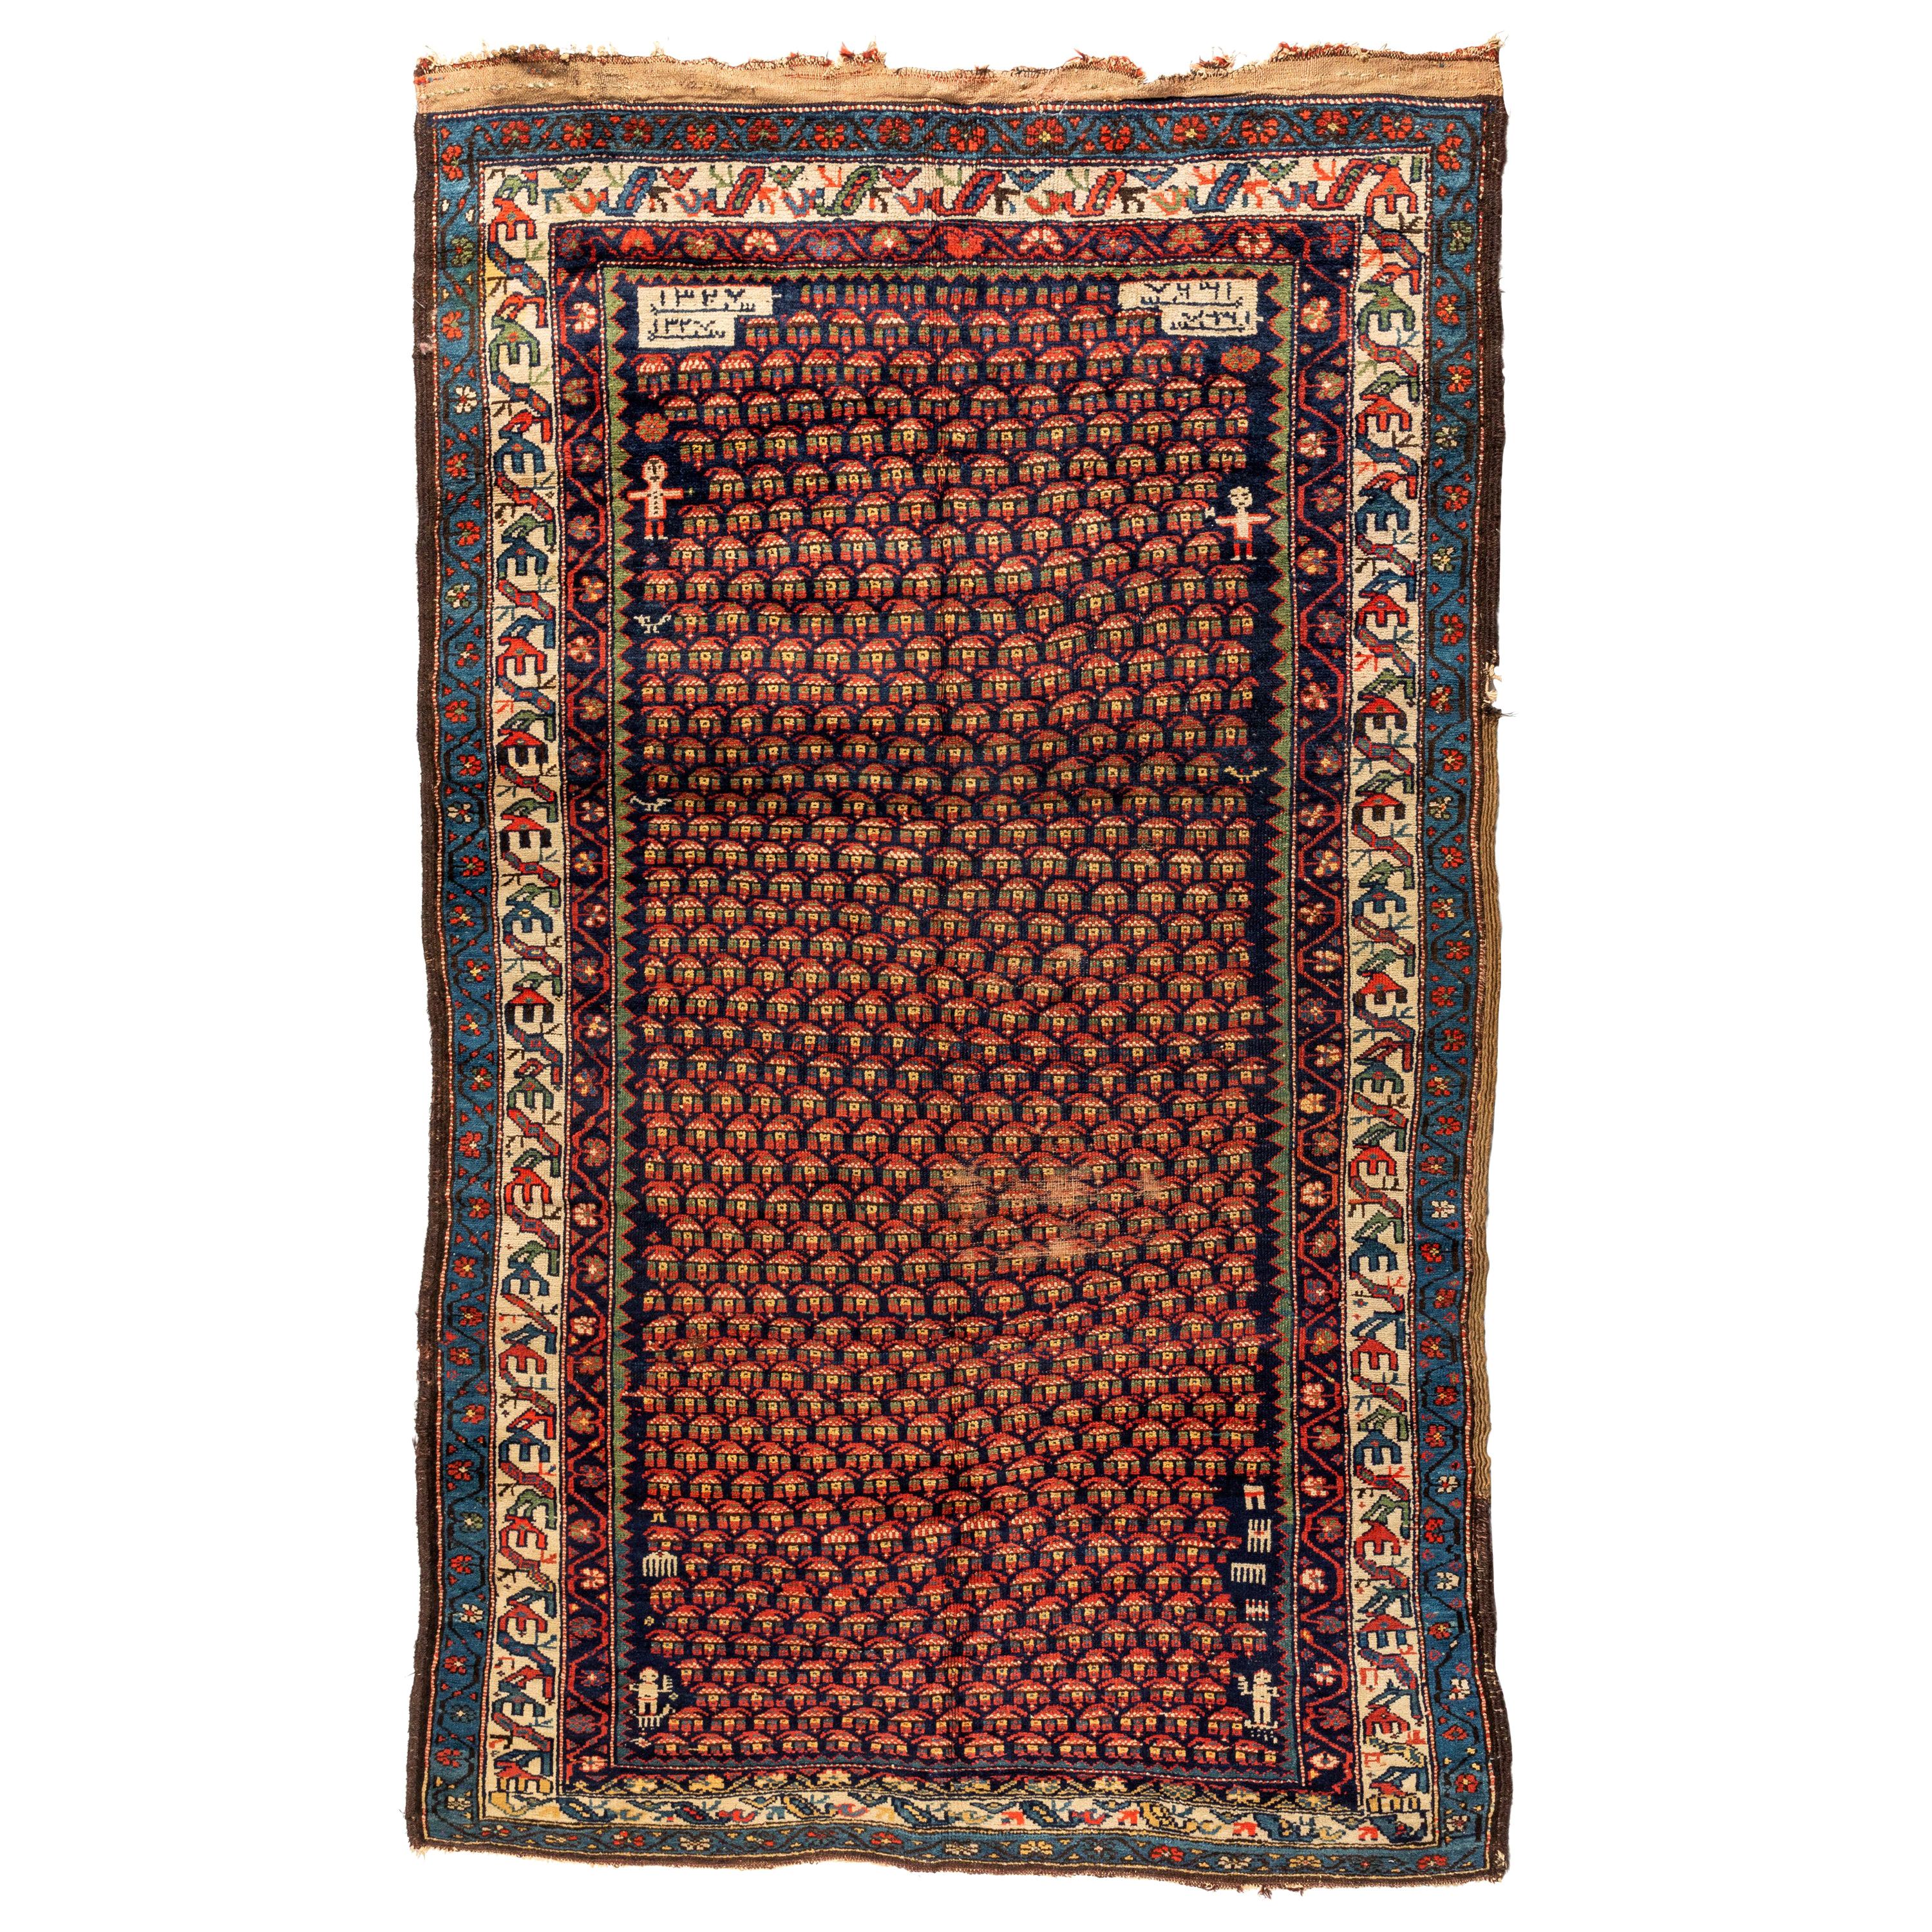 Antiker kaukasischer Karabagh-Teppich mit kaukasischem Stammesmotiv in Marineblau-Rot, datiert 1909